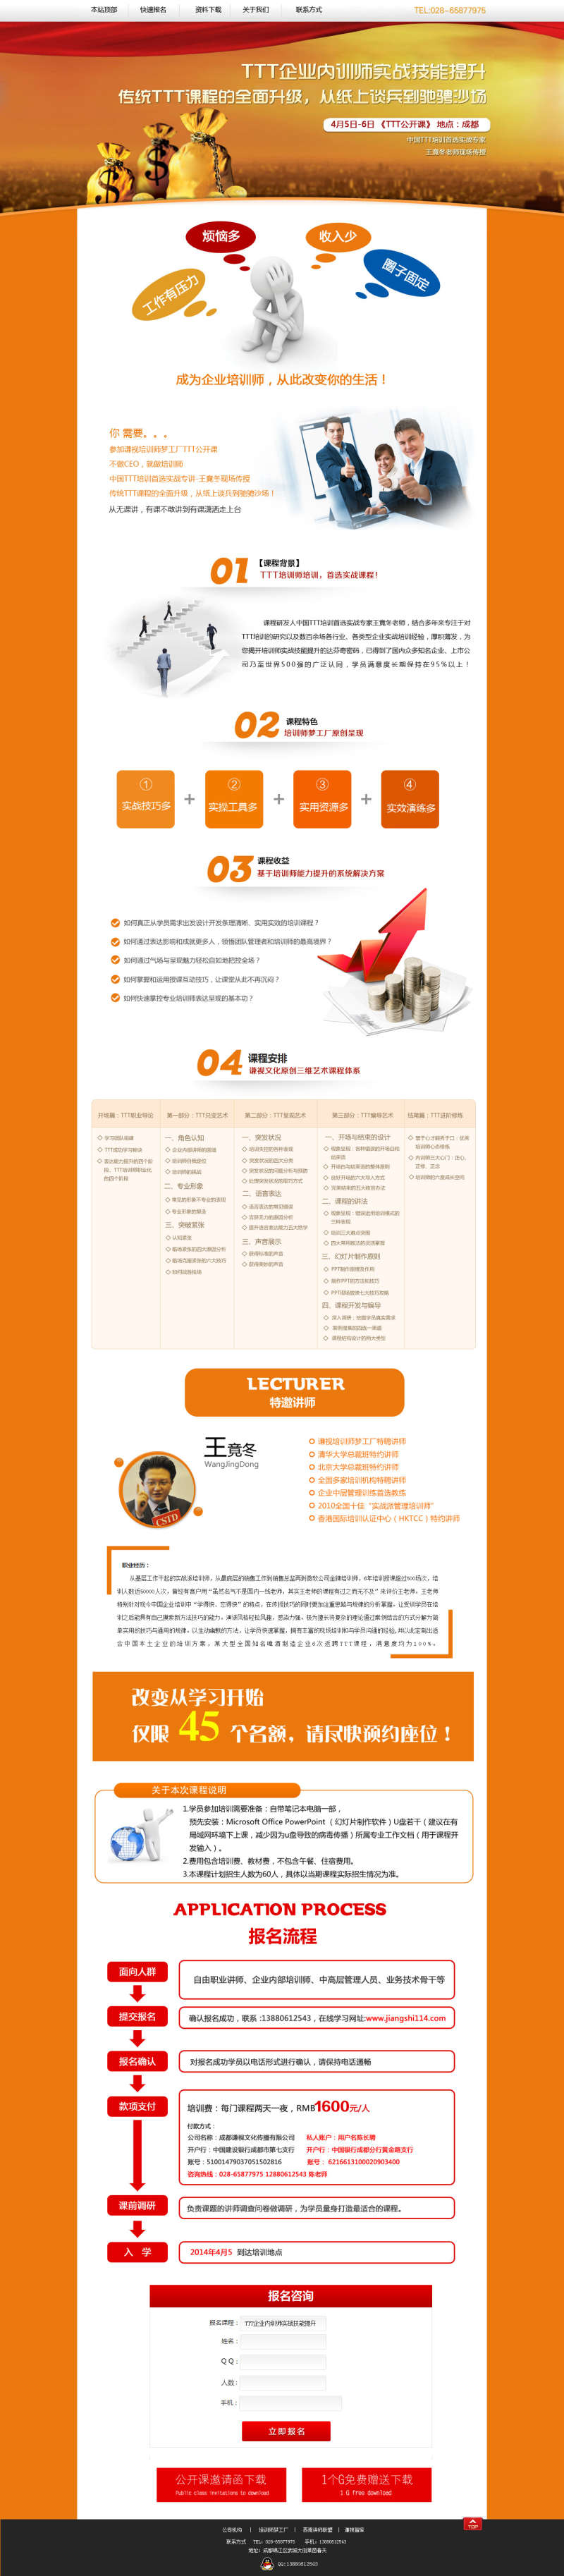 橙色的企业技能培训广告专题页面模板psd分层素材下载